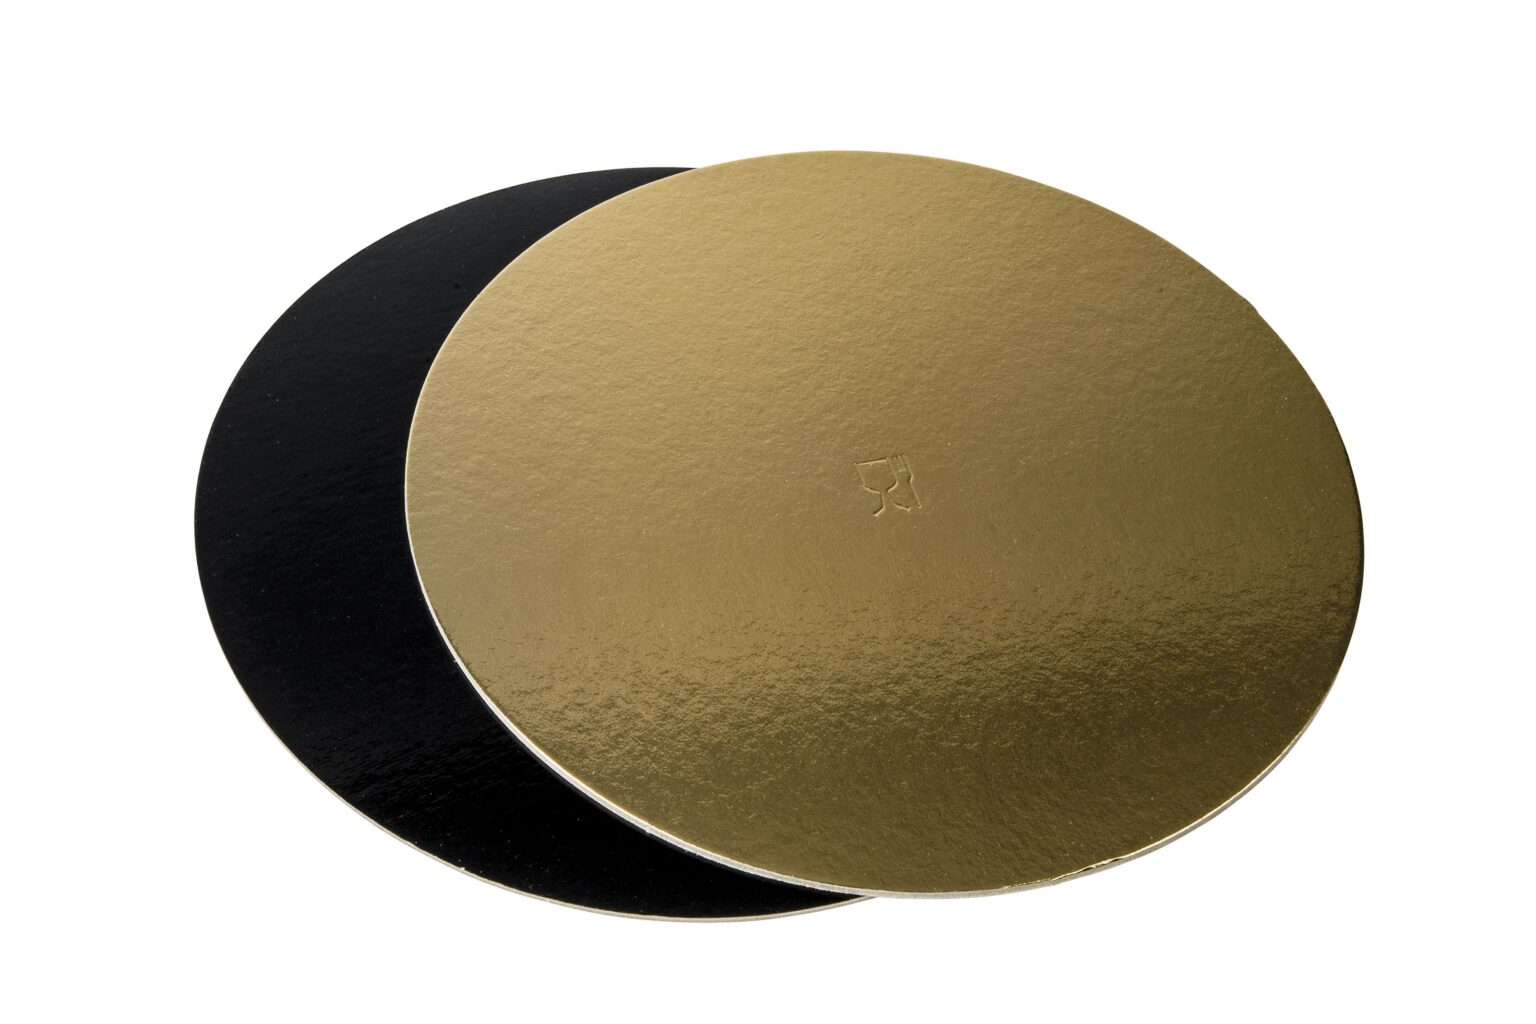 Poza Discuri groase auriu/negru - Discuri groase auriu/negru 2400 gr OE34cm -10 buc/set